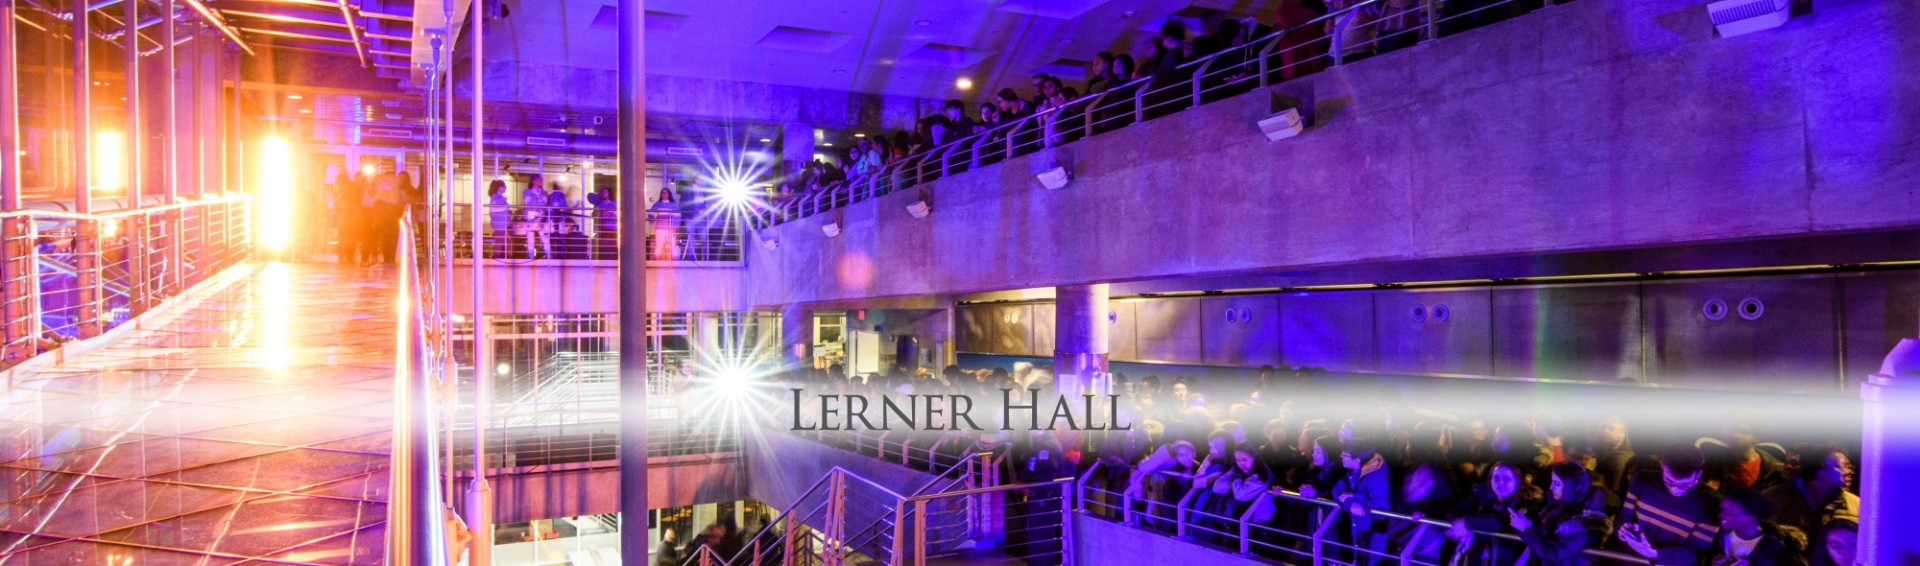 Lerner Hall